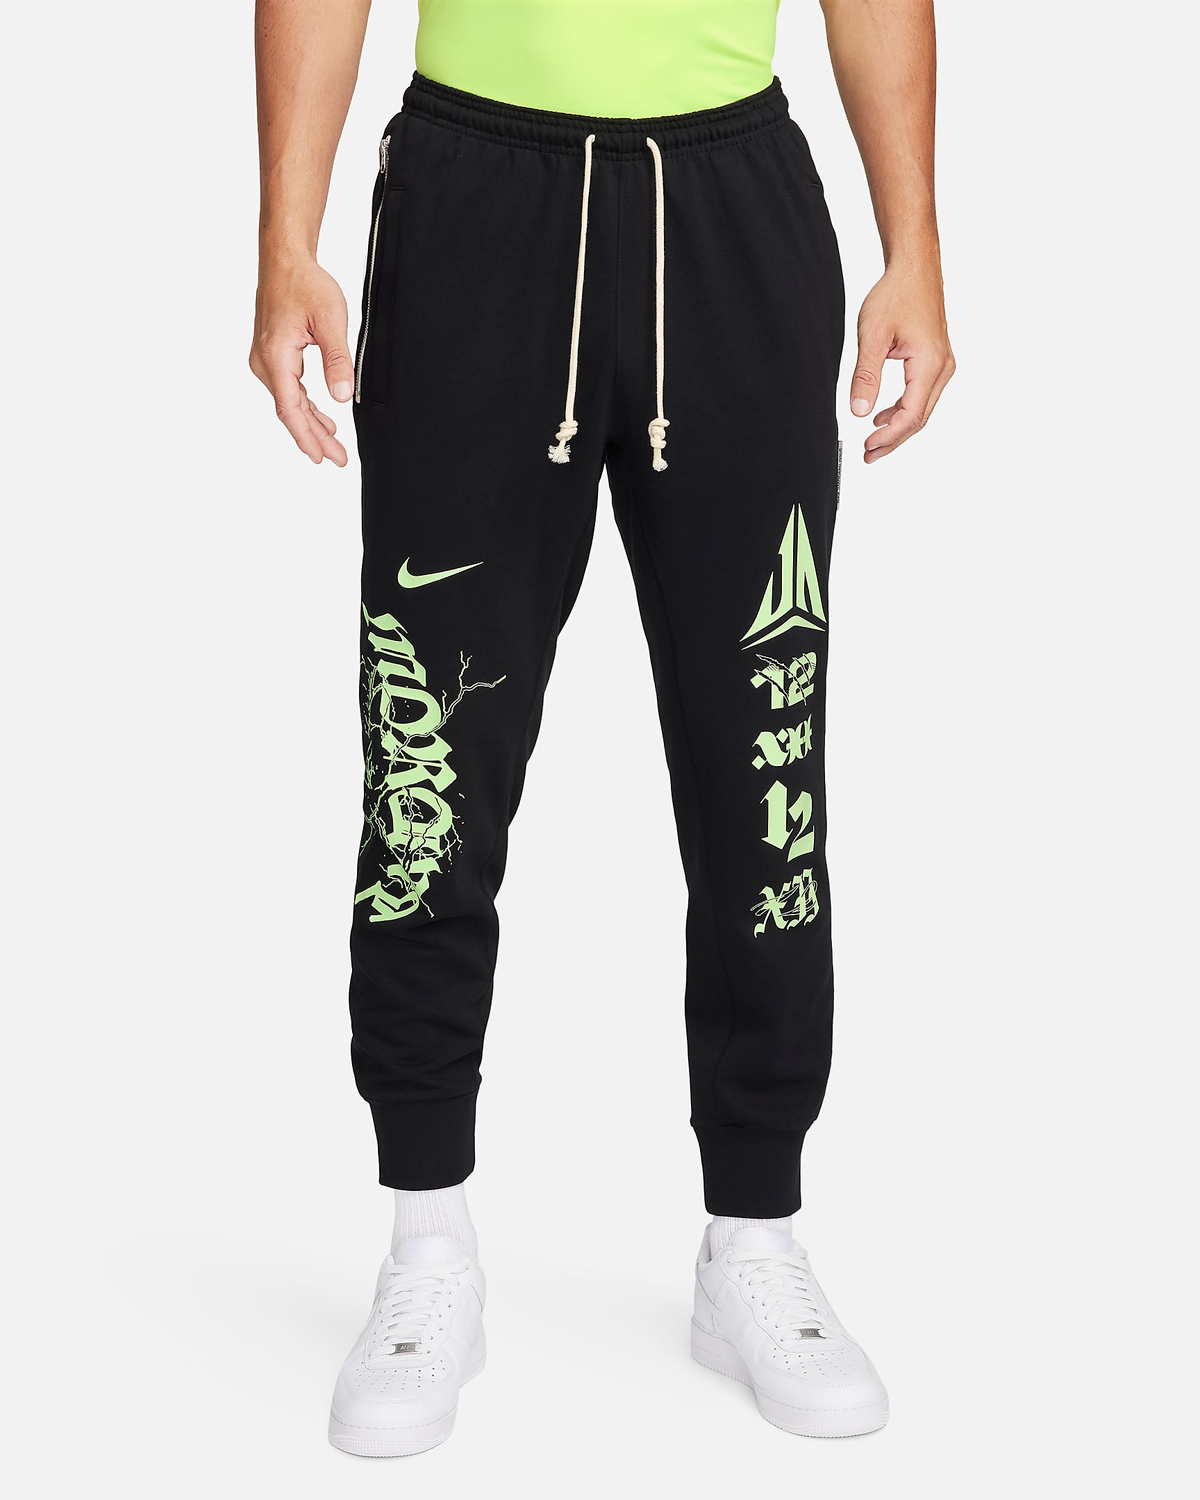 Nike-Ja-1-Zombie-Halloween-Pants-Black-Lime-1